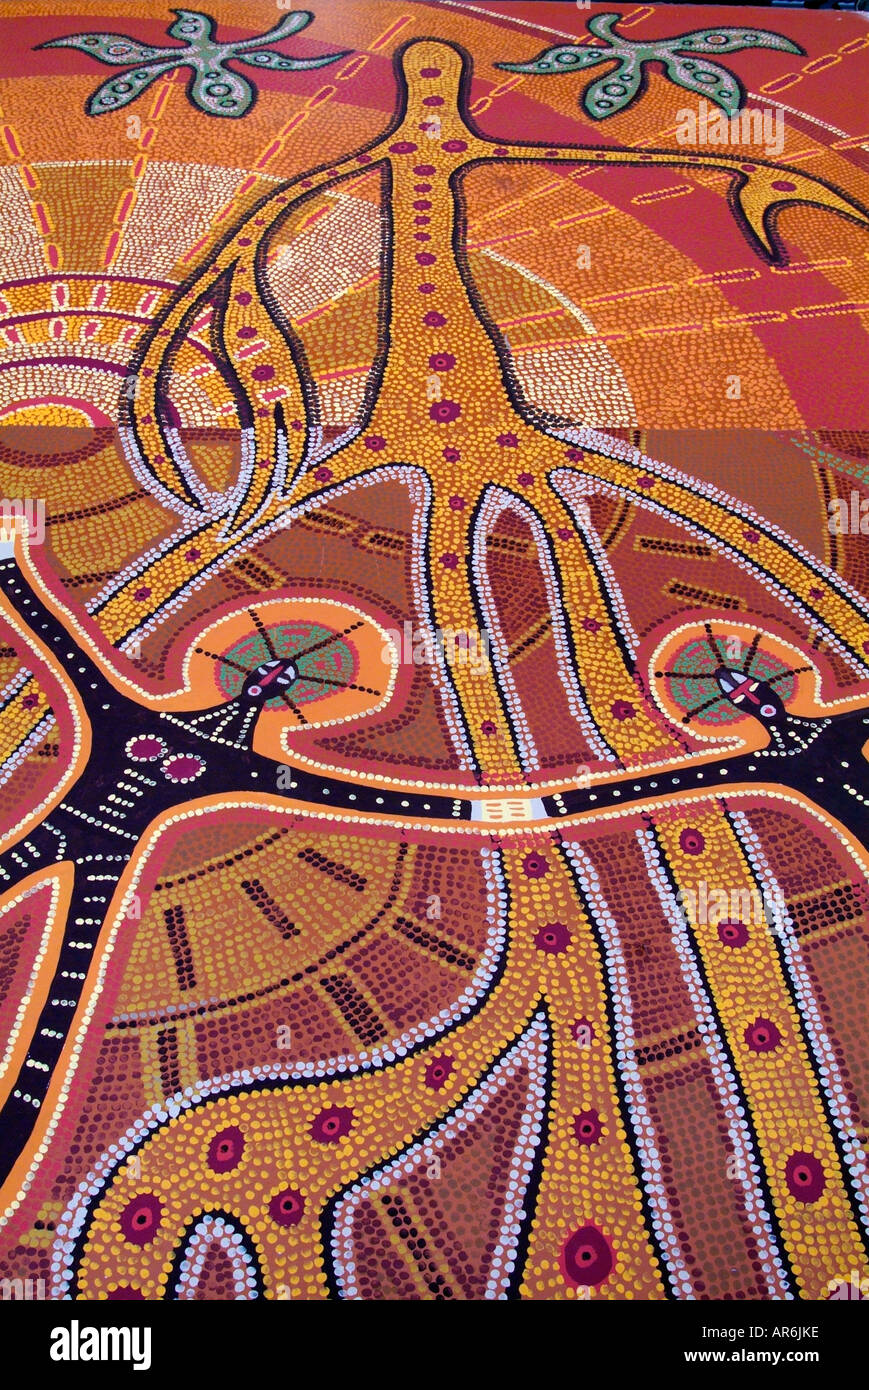 L'art aborigène Australie rêve temps terre dot peinture exposition de l'héritage de la culture de l'Australasie Europe brown earth circle Banque D'Images